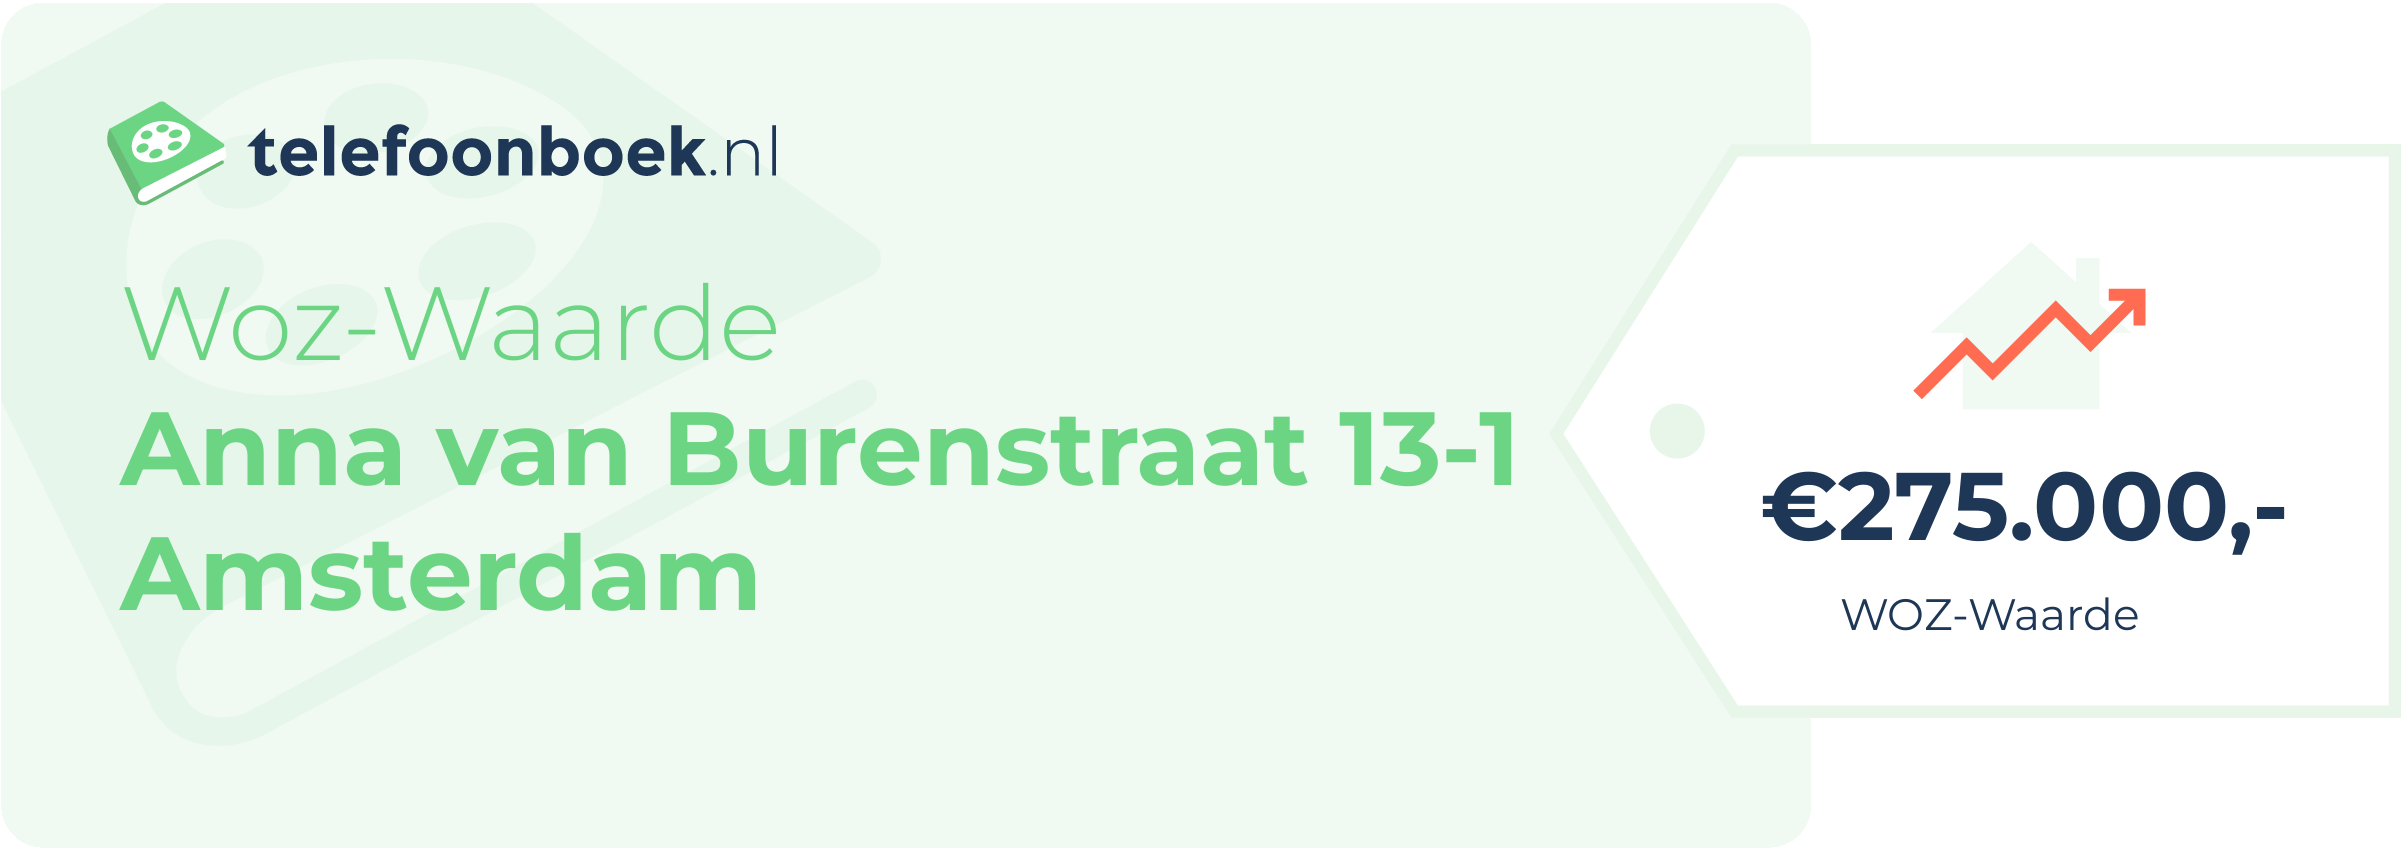 WOZ-waarde Anna Van Burenstraat 13-1 Amsterdam